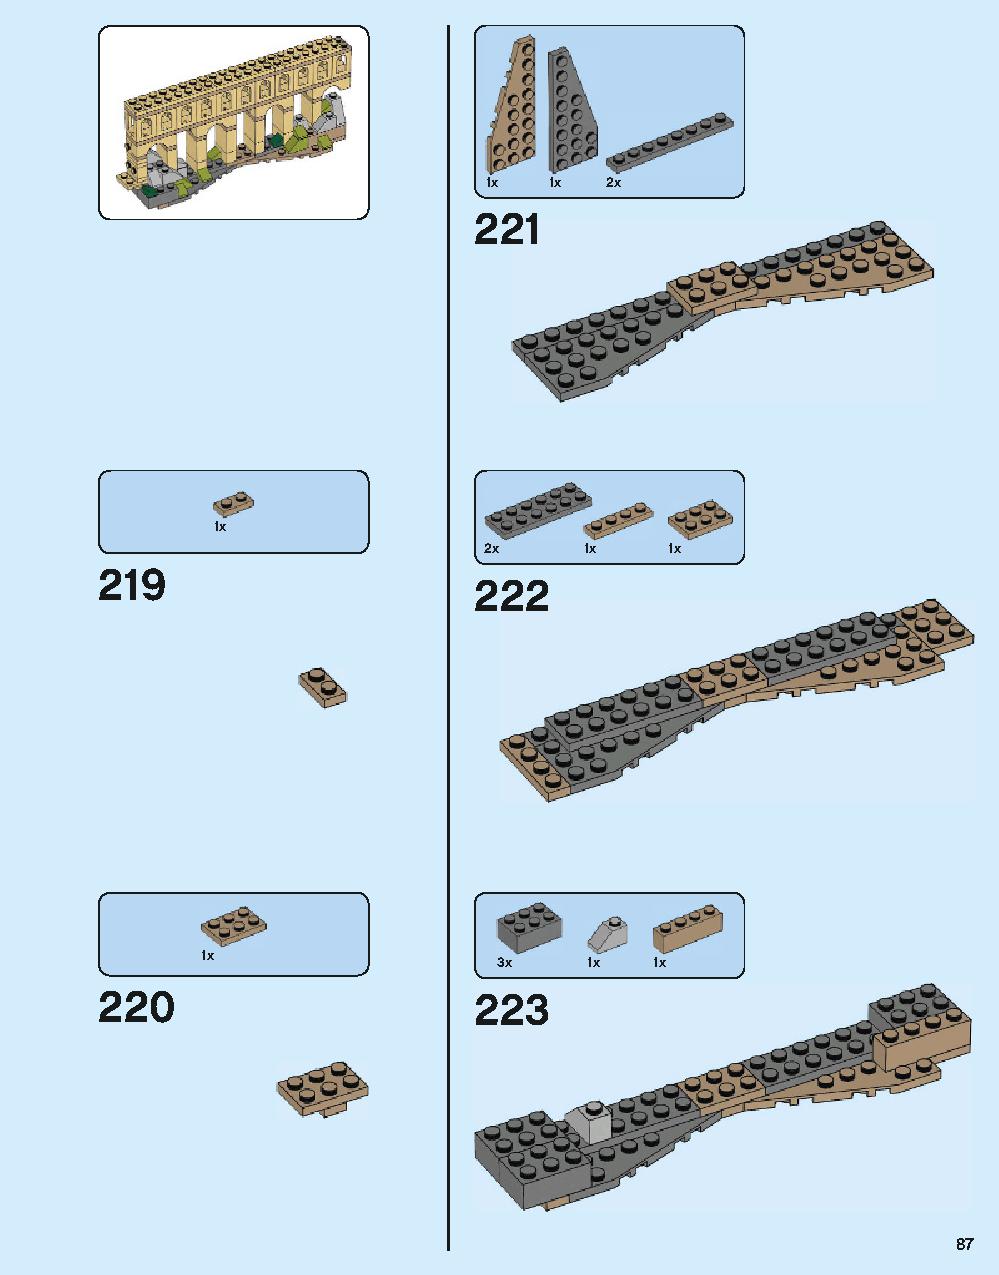 ホグワーツ城 71043 レゴの商品情報 レゴの説明書・組立方法 87 page